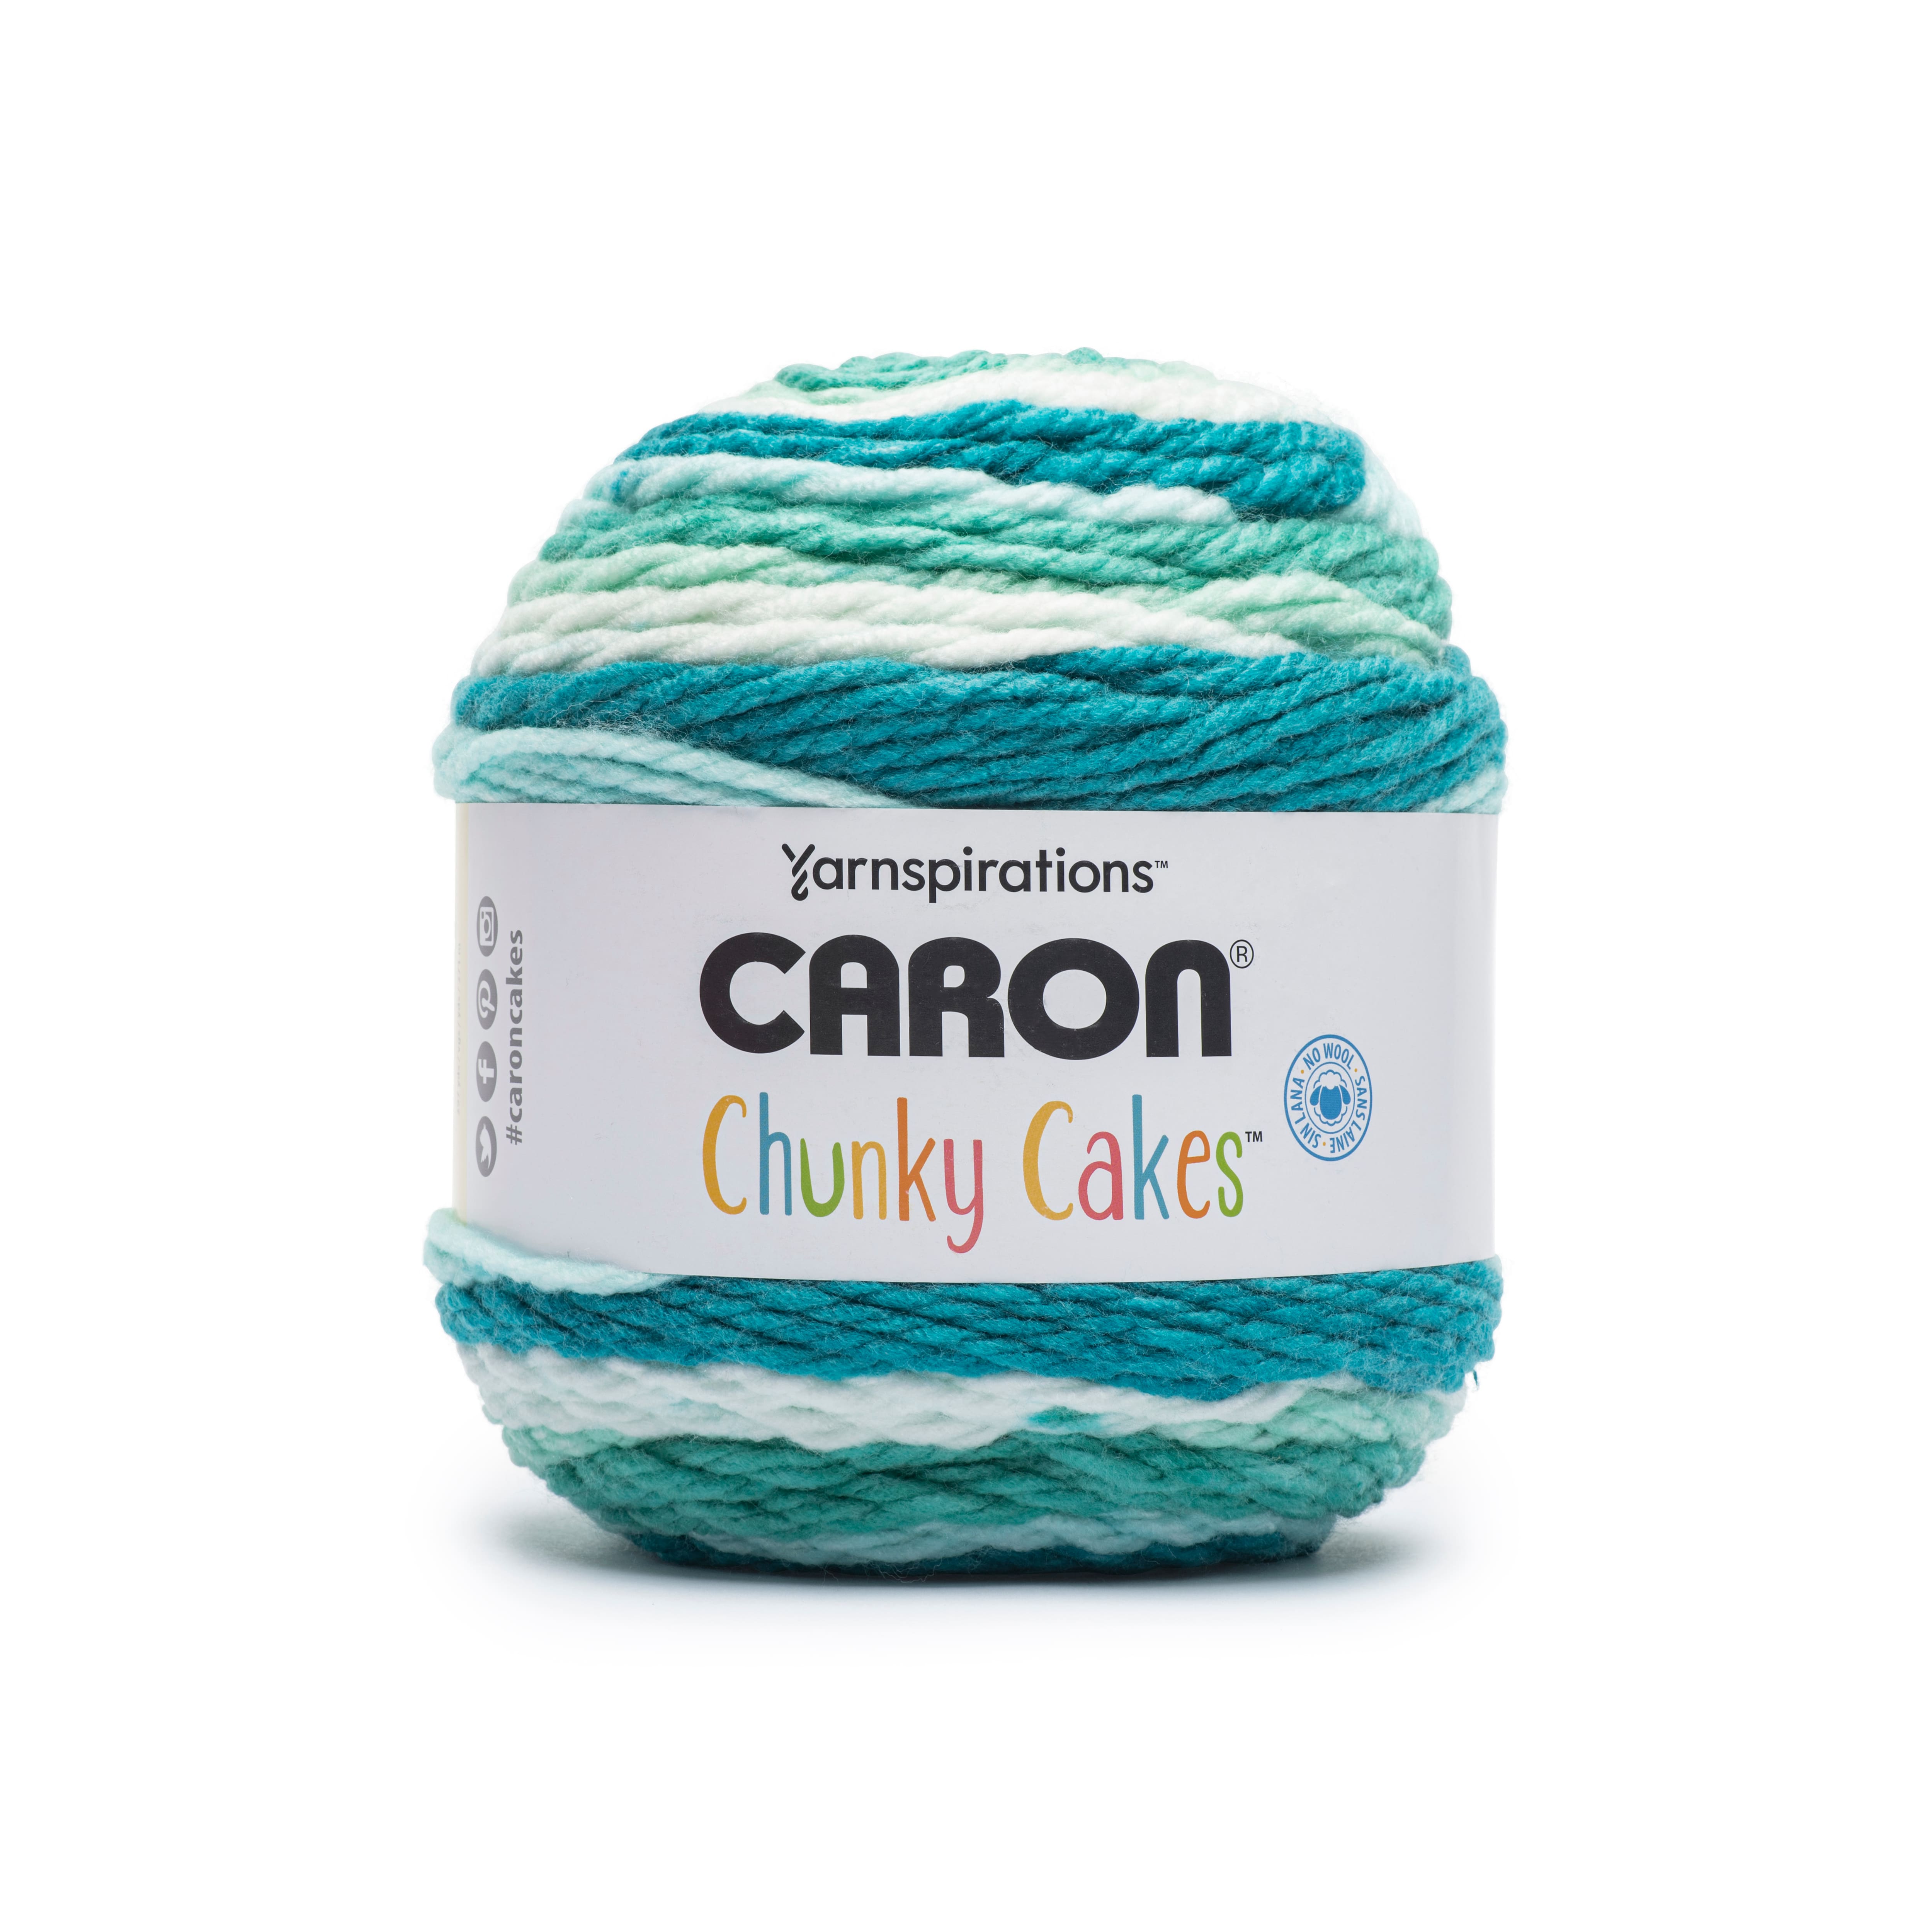 NEW Caron Cakes “ZUCCHINI LOAF” 17048 - Acrylic/Wool 80/20% Yarn  🧶7.1oz/383yds/